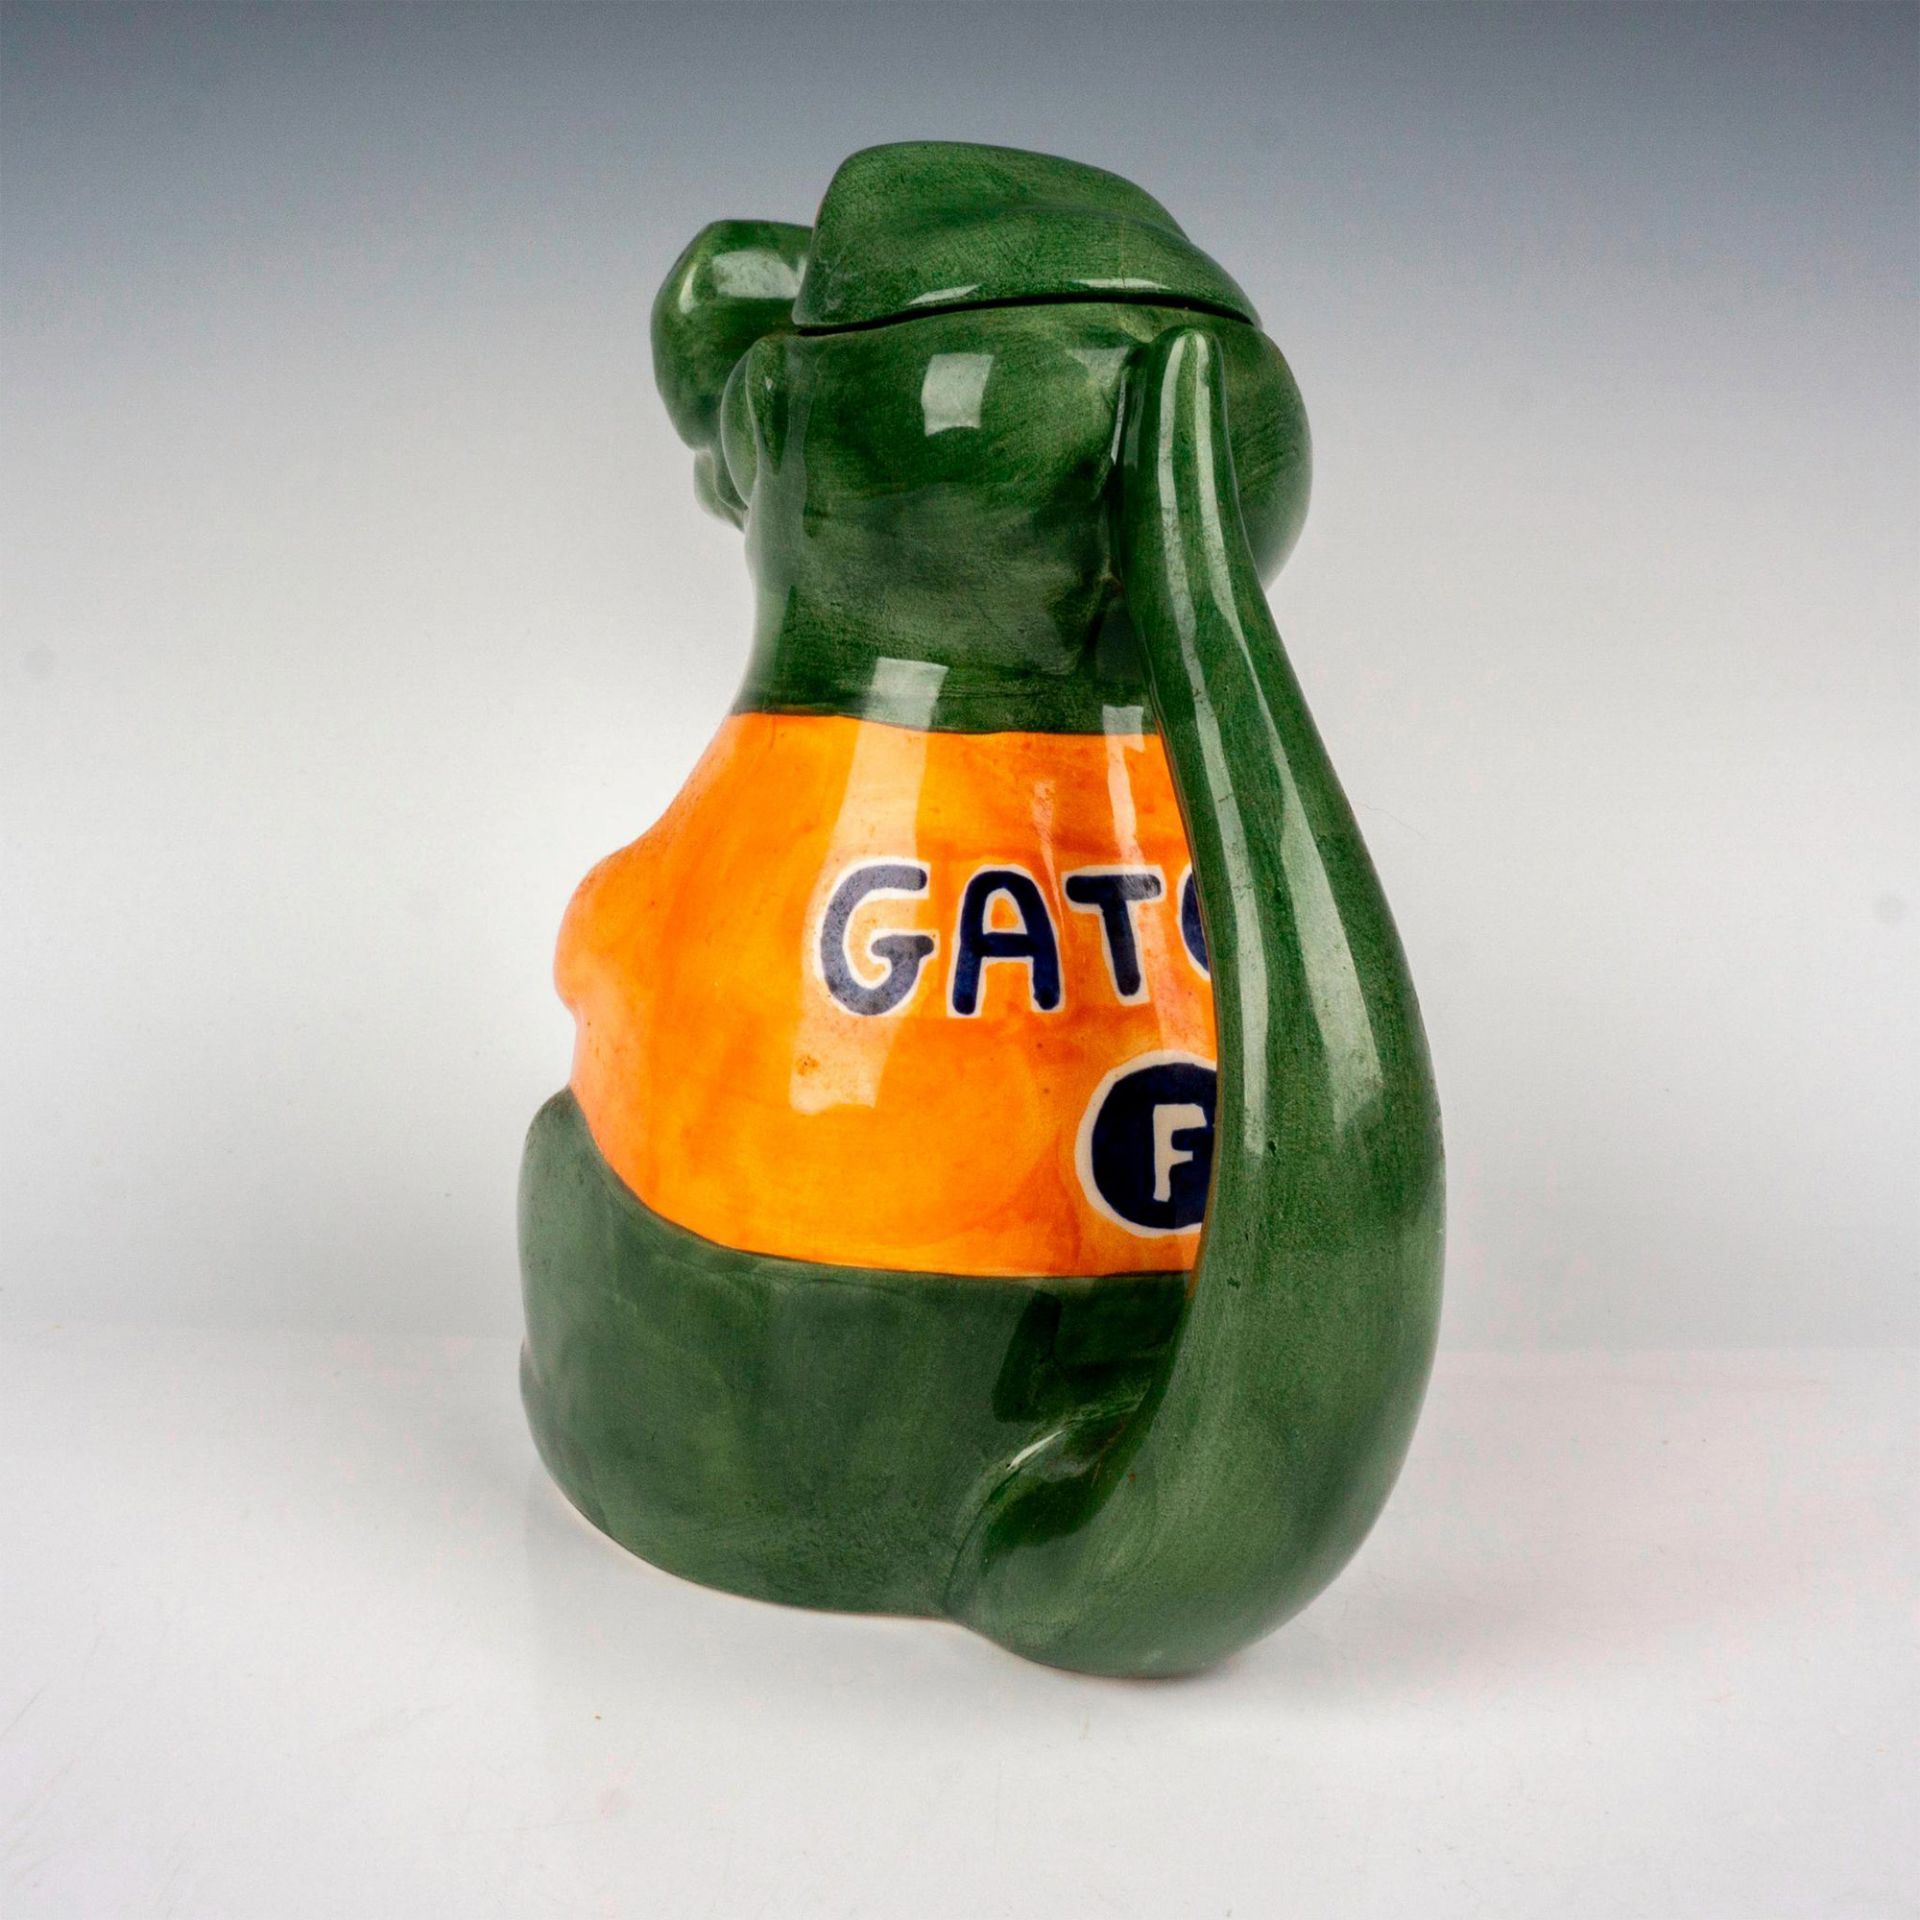 Carlton Ware Lidded Teapot, Gator - Image 3 of 4